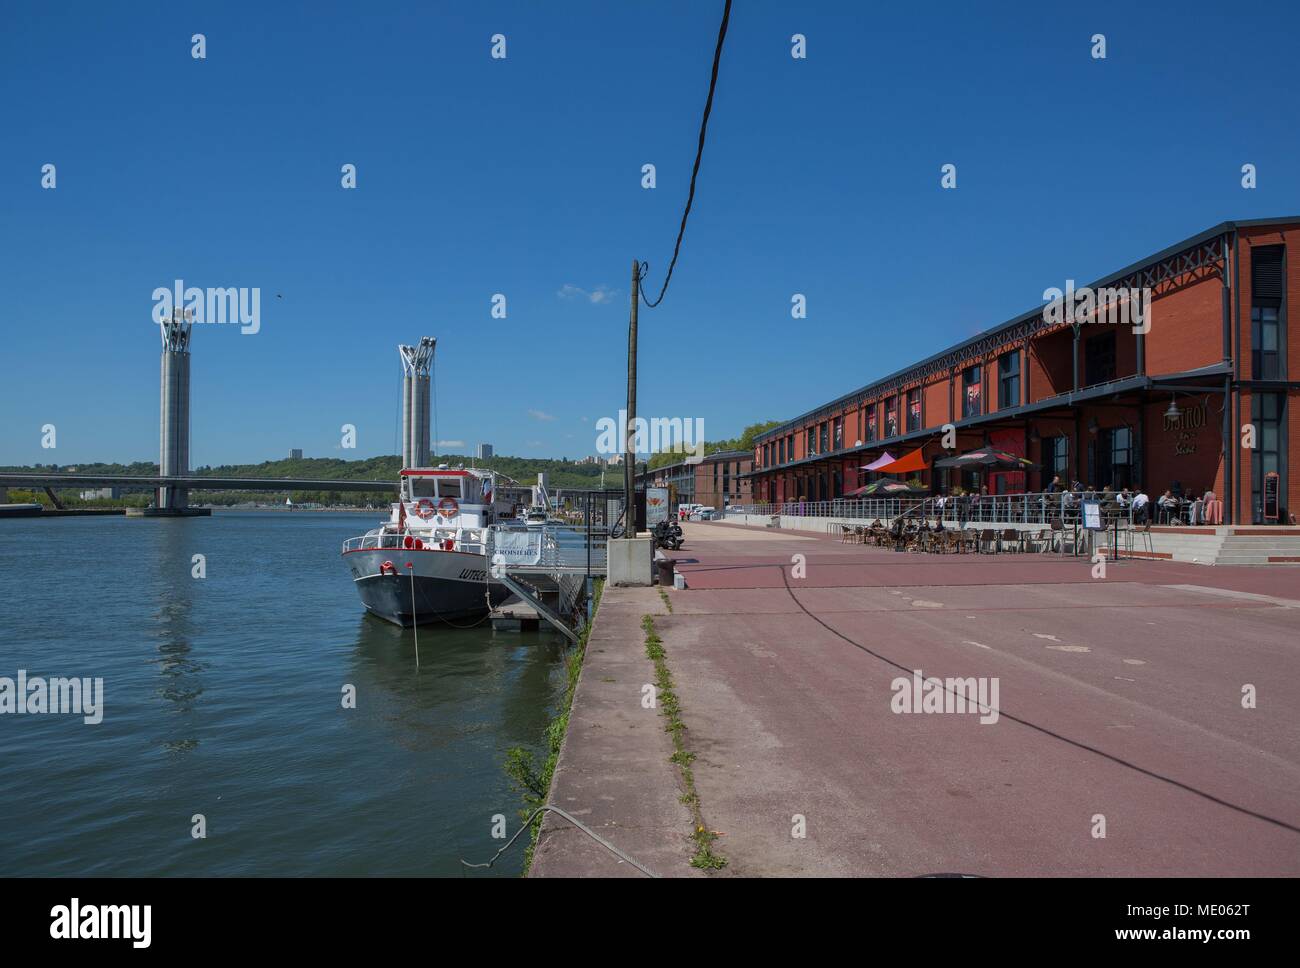 France, Rouen, quai, Promenade, quais, ancien Normandie-Niemen docks restaurés, des terrasses de restaurants, Pont Flaubert Banque D'Images